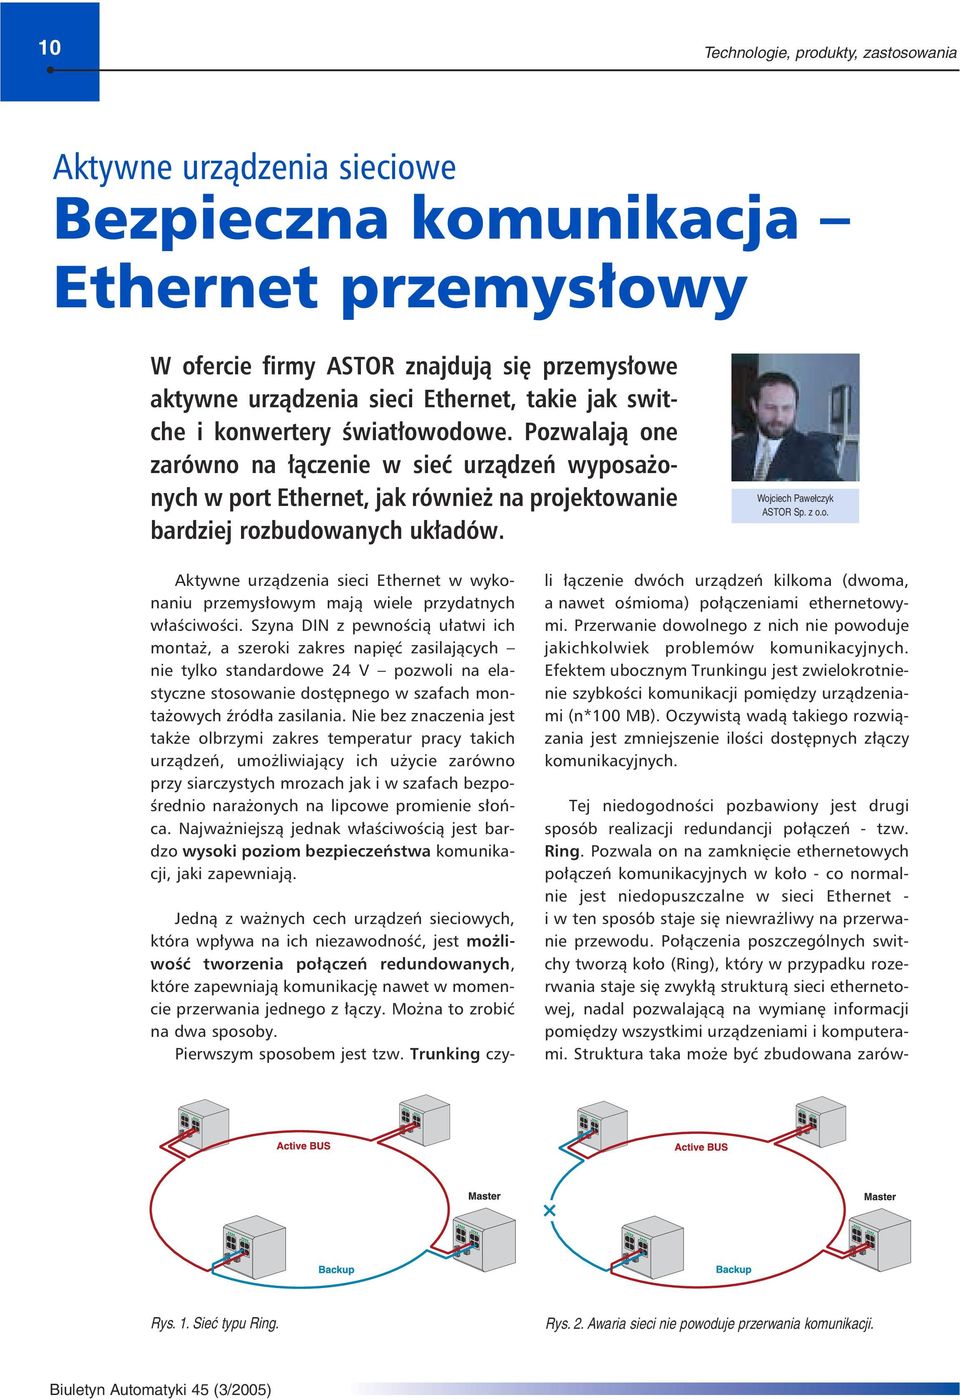 Wojciech Pawełczyk ASTOR Sp. z o.o. Aktywne urządzenia sieci Ethernet w wykonaniu przemysłowym mają wiele przydatnych właściwości.